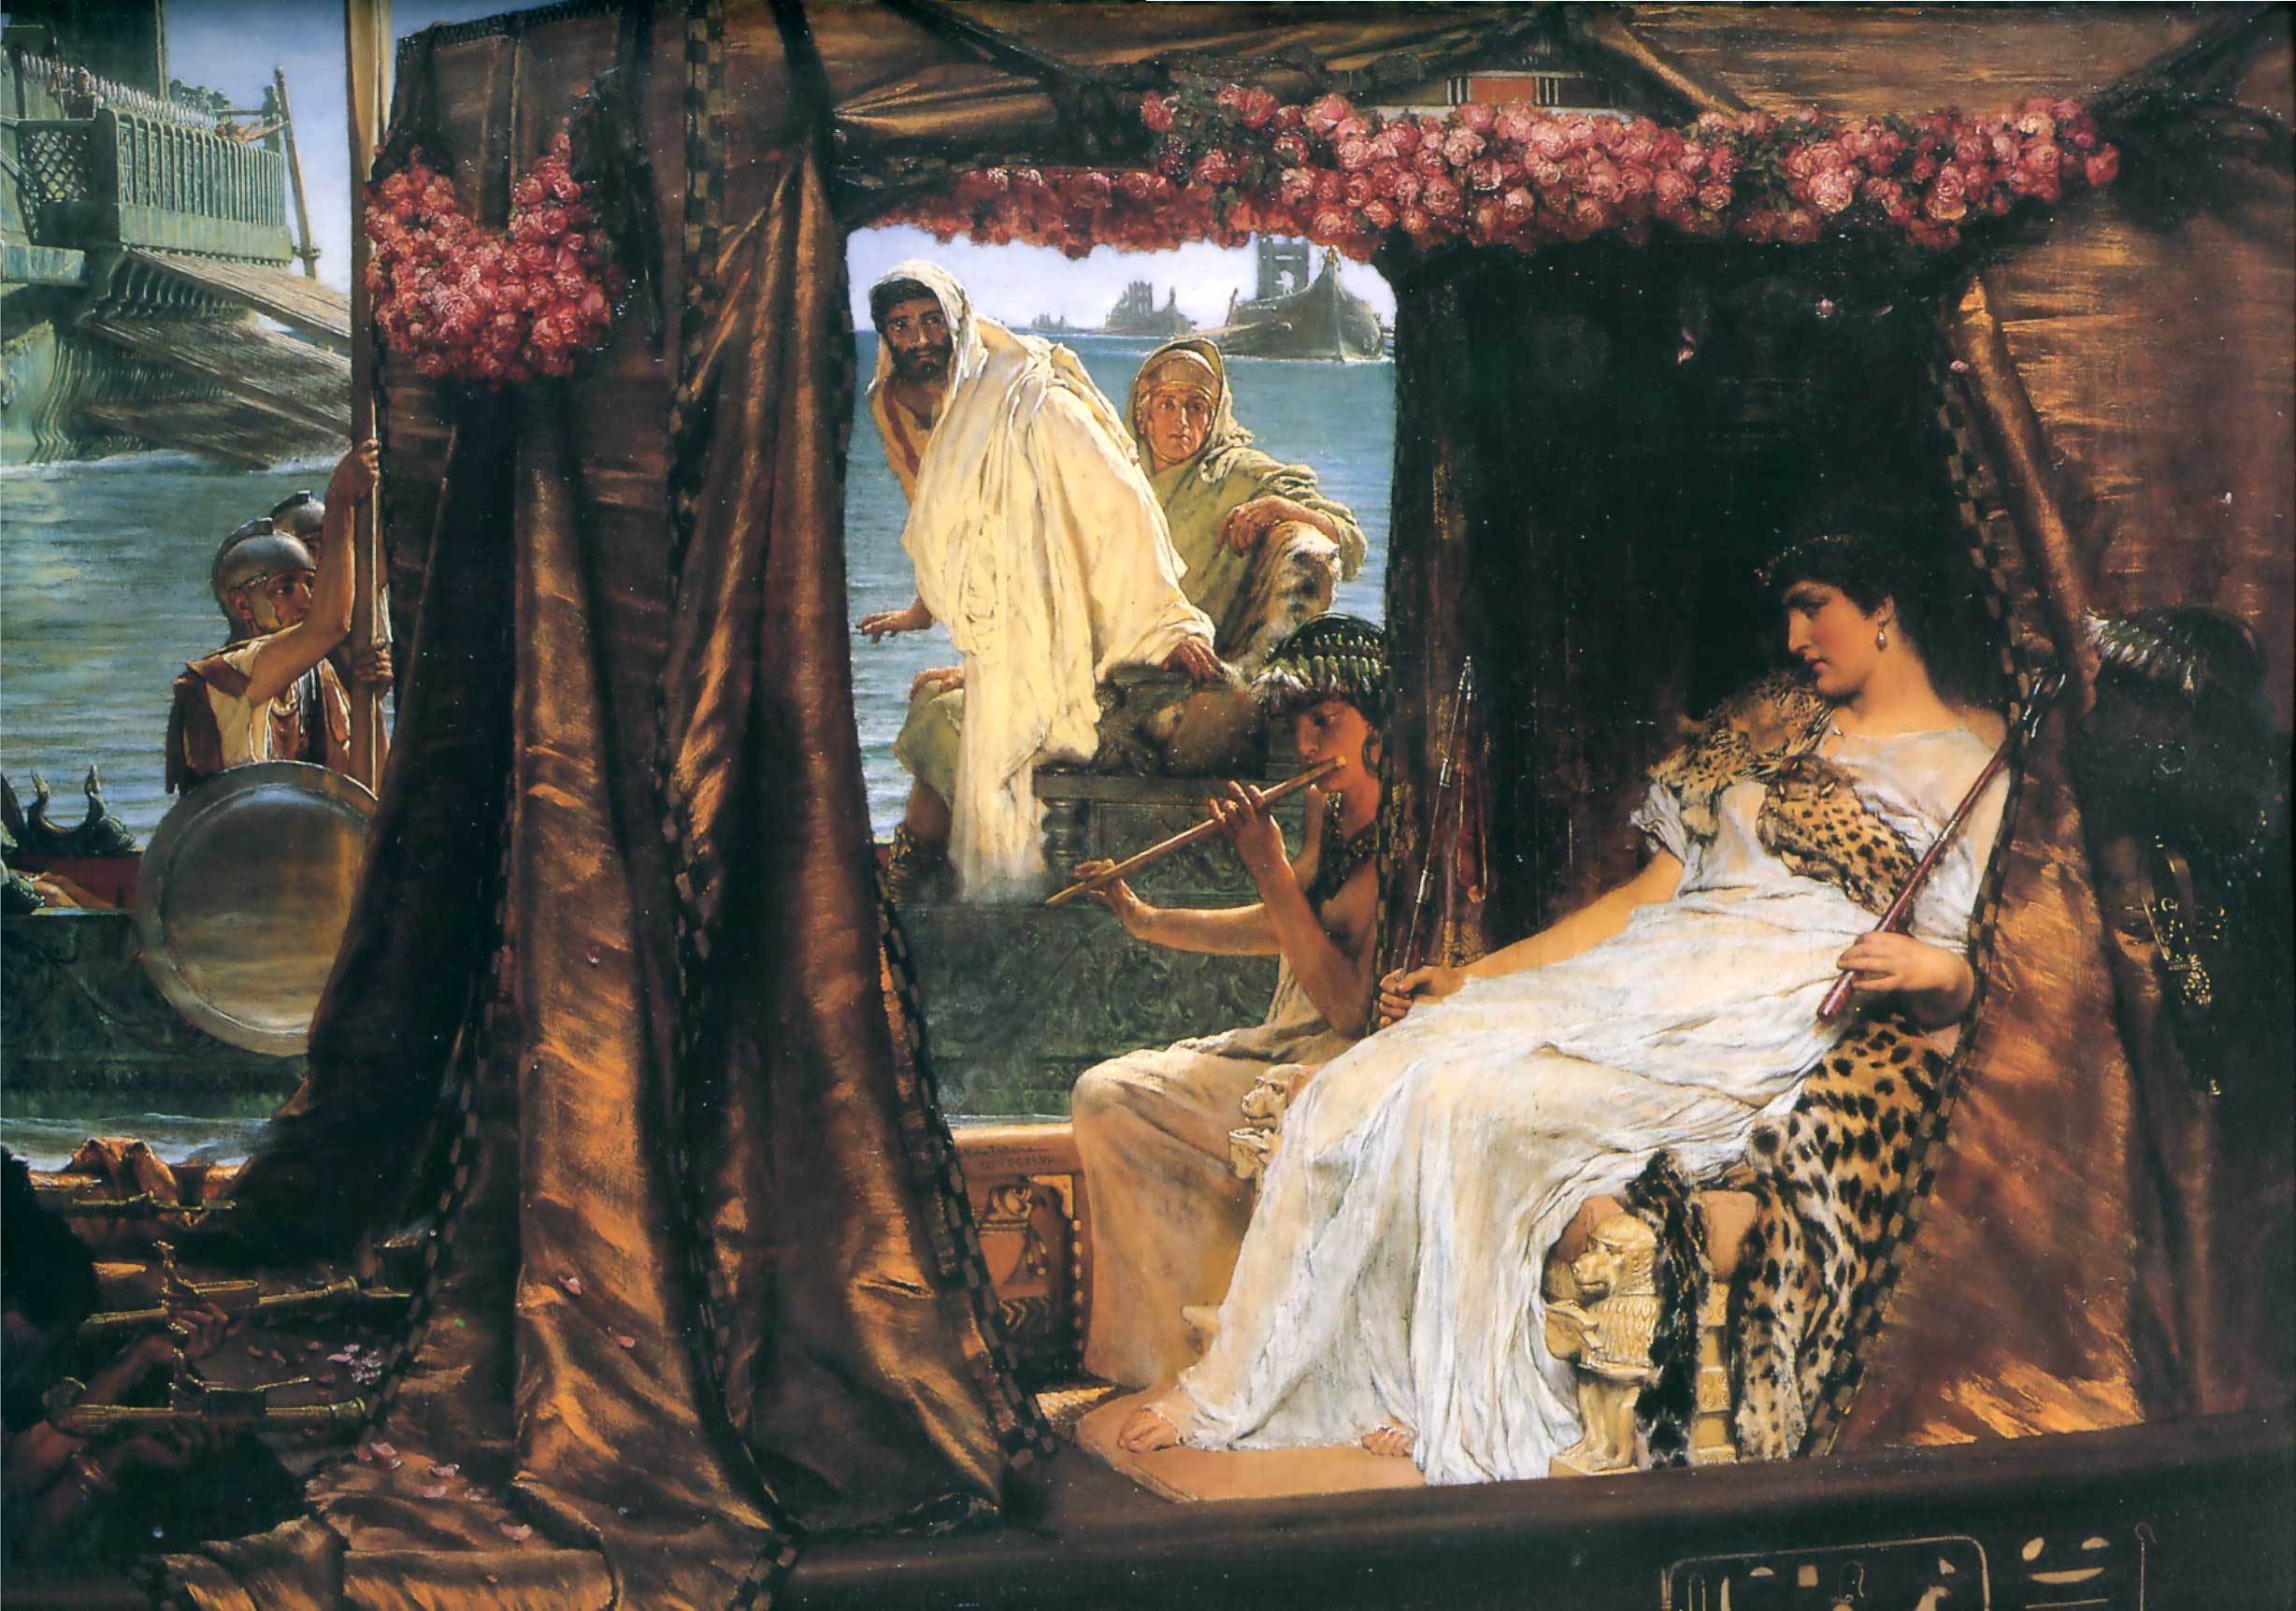 Spotkanie Antoniusza i Kleopatry, 41 r. p .n. e by Lawrence Alma-Tadema - 1885 - 65.5 × 92 cm 